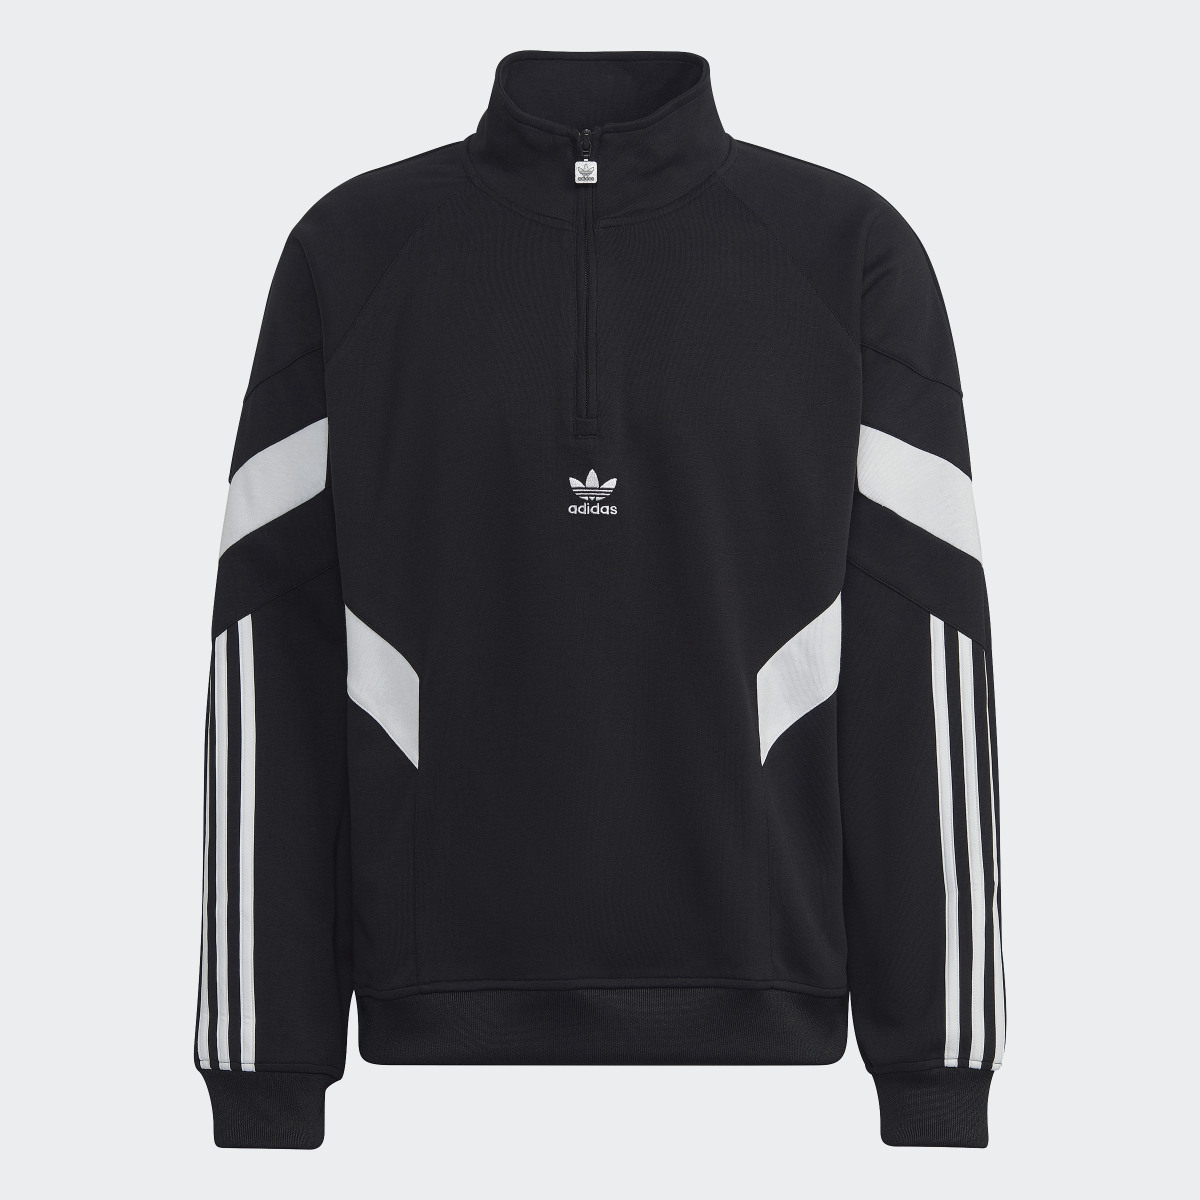 Adidas Rekive Half-Zip Sweatshirt. 5